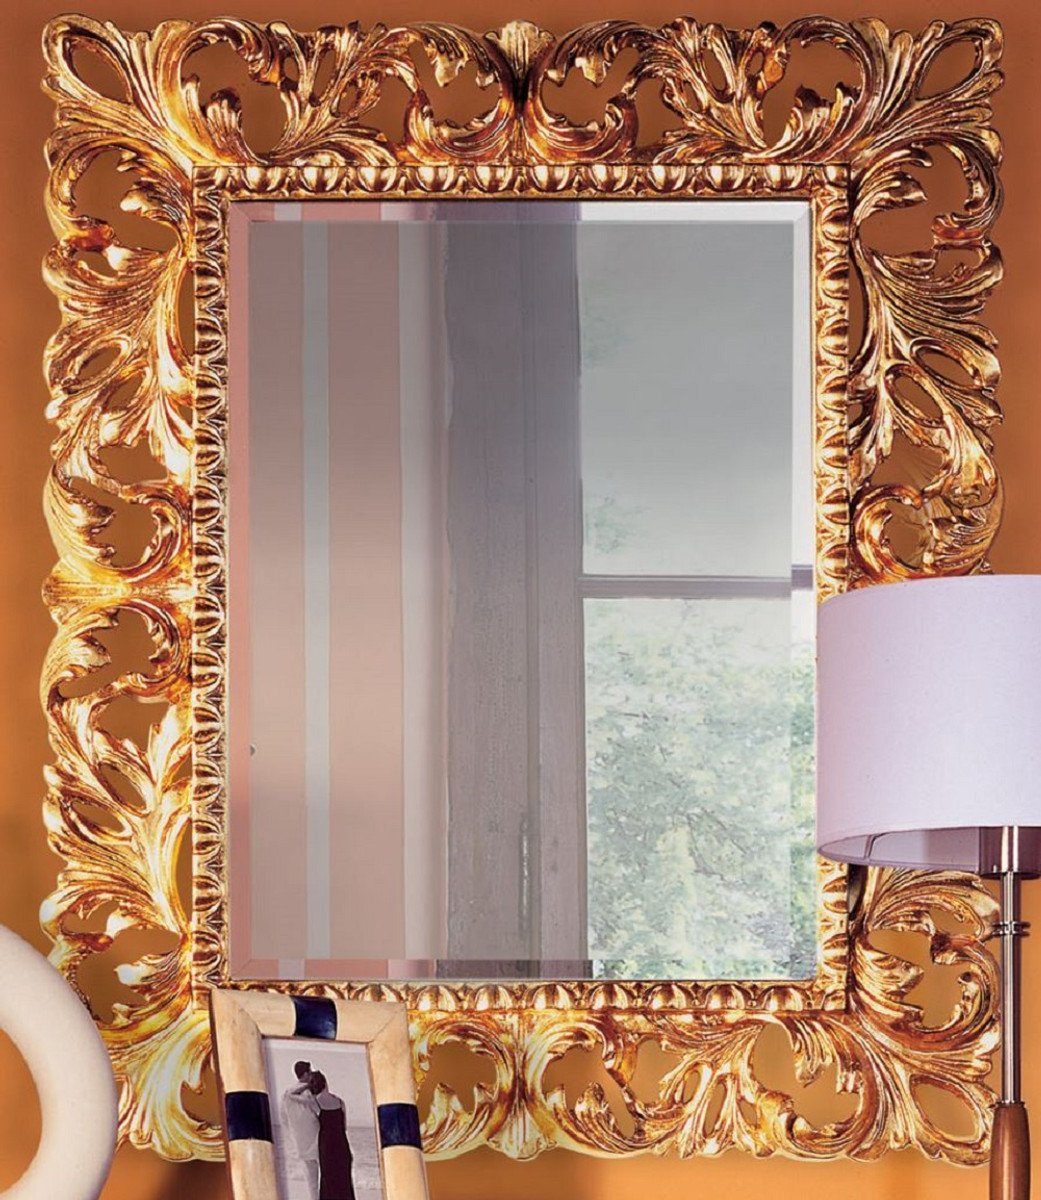 Casa Padrino Barockspiegel Luxus Barock Spiegel Gold 87 x 6 x H. 107 cm - Edler Massivholz Wandspiegel im Barockstil - Antik Stil Garderoben Spiegel - Wohnzimmer Spiegel - Barock Möbel